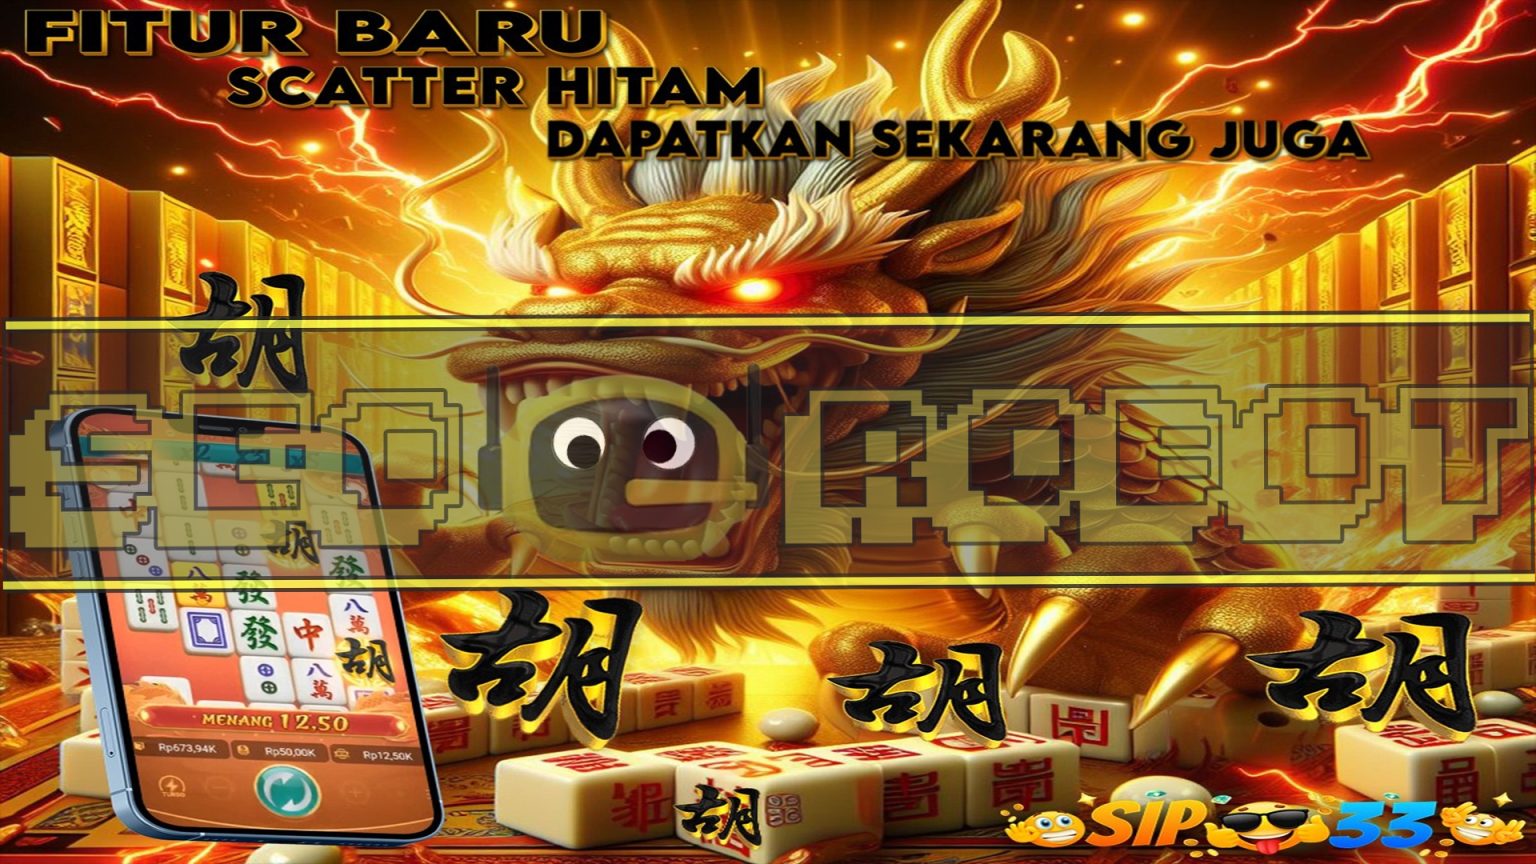 Deretan Game Slot Online Banyak Bonus Terlaris Di Indonesia